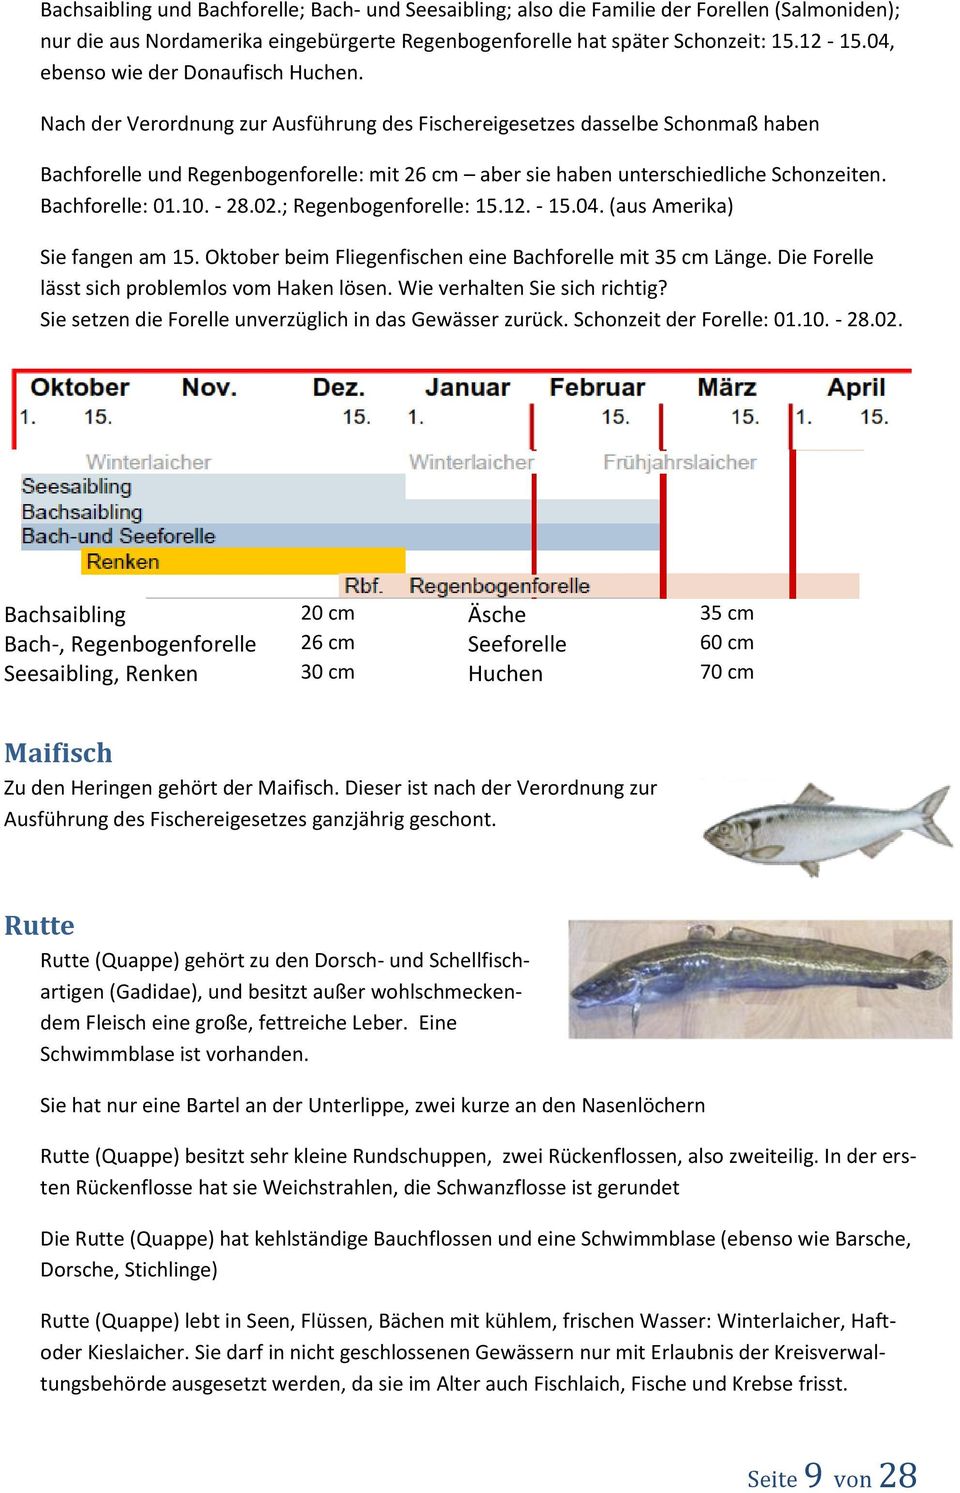 Nach der Verordnung zur Ausführung des Fischereigesetzes dasselbe Schonmaß haben Bachforelle und Regenbogenforelle: mit 26 cm aber sie haben unterschiedliche Schonzeiten. Bachforelle: 01.10. - 28.02.